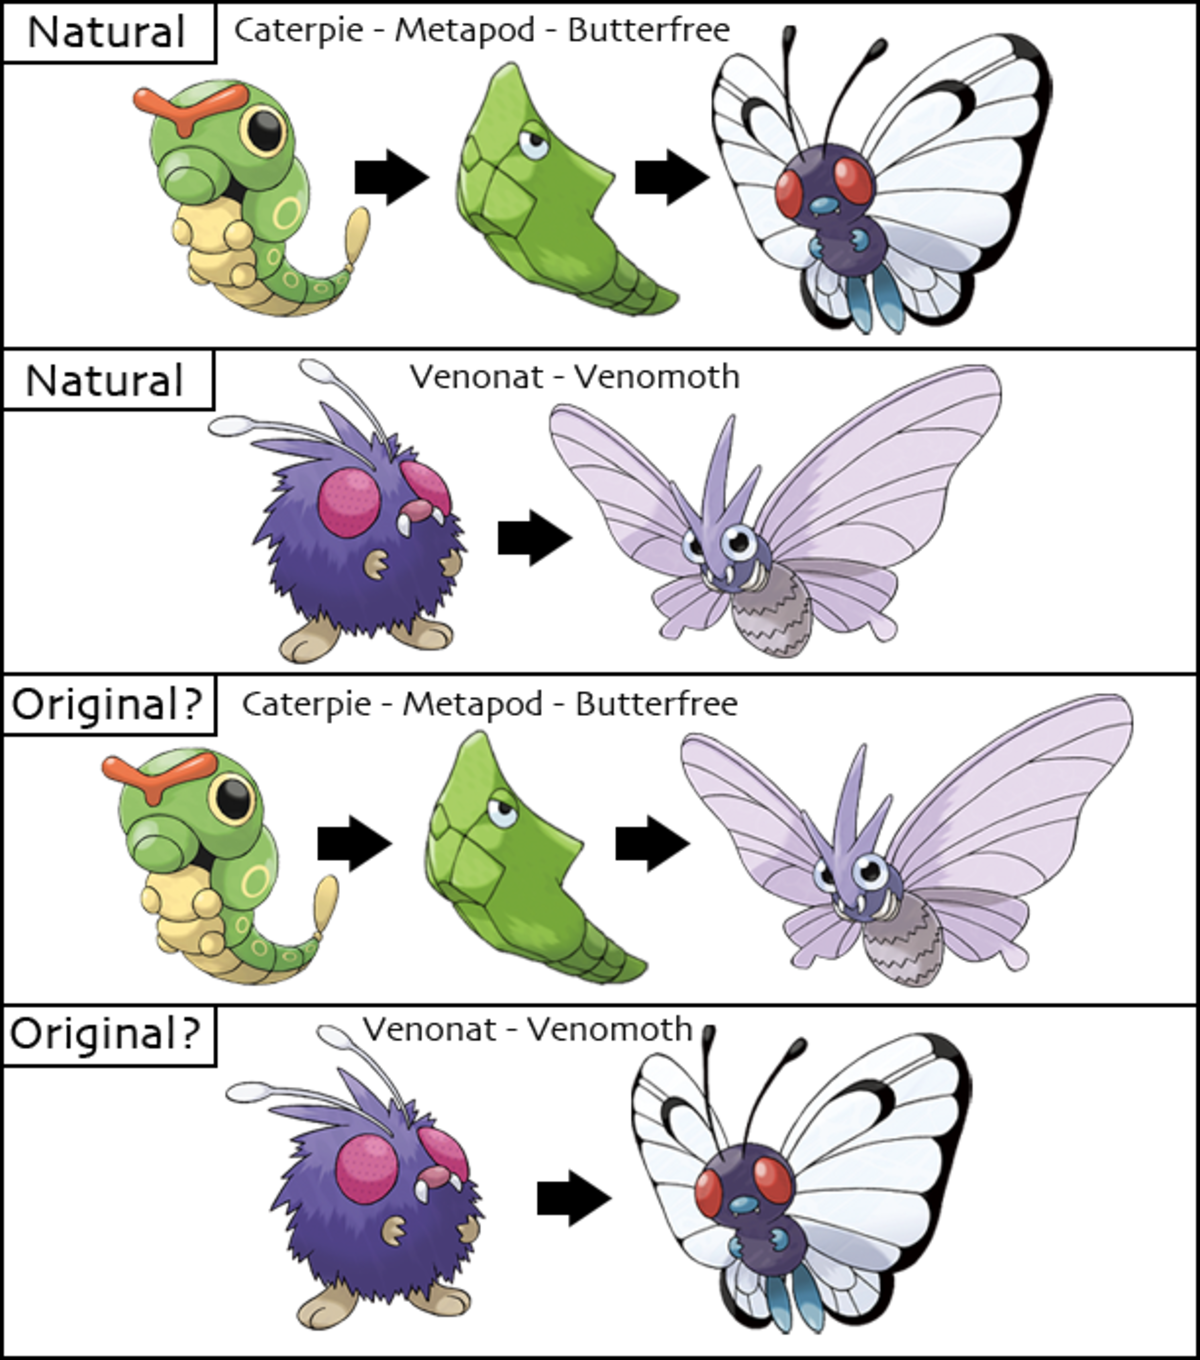 Teorías de la evolución de los Pokémon